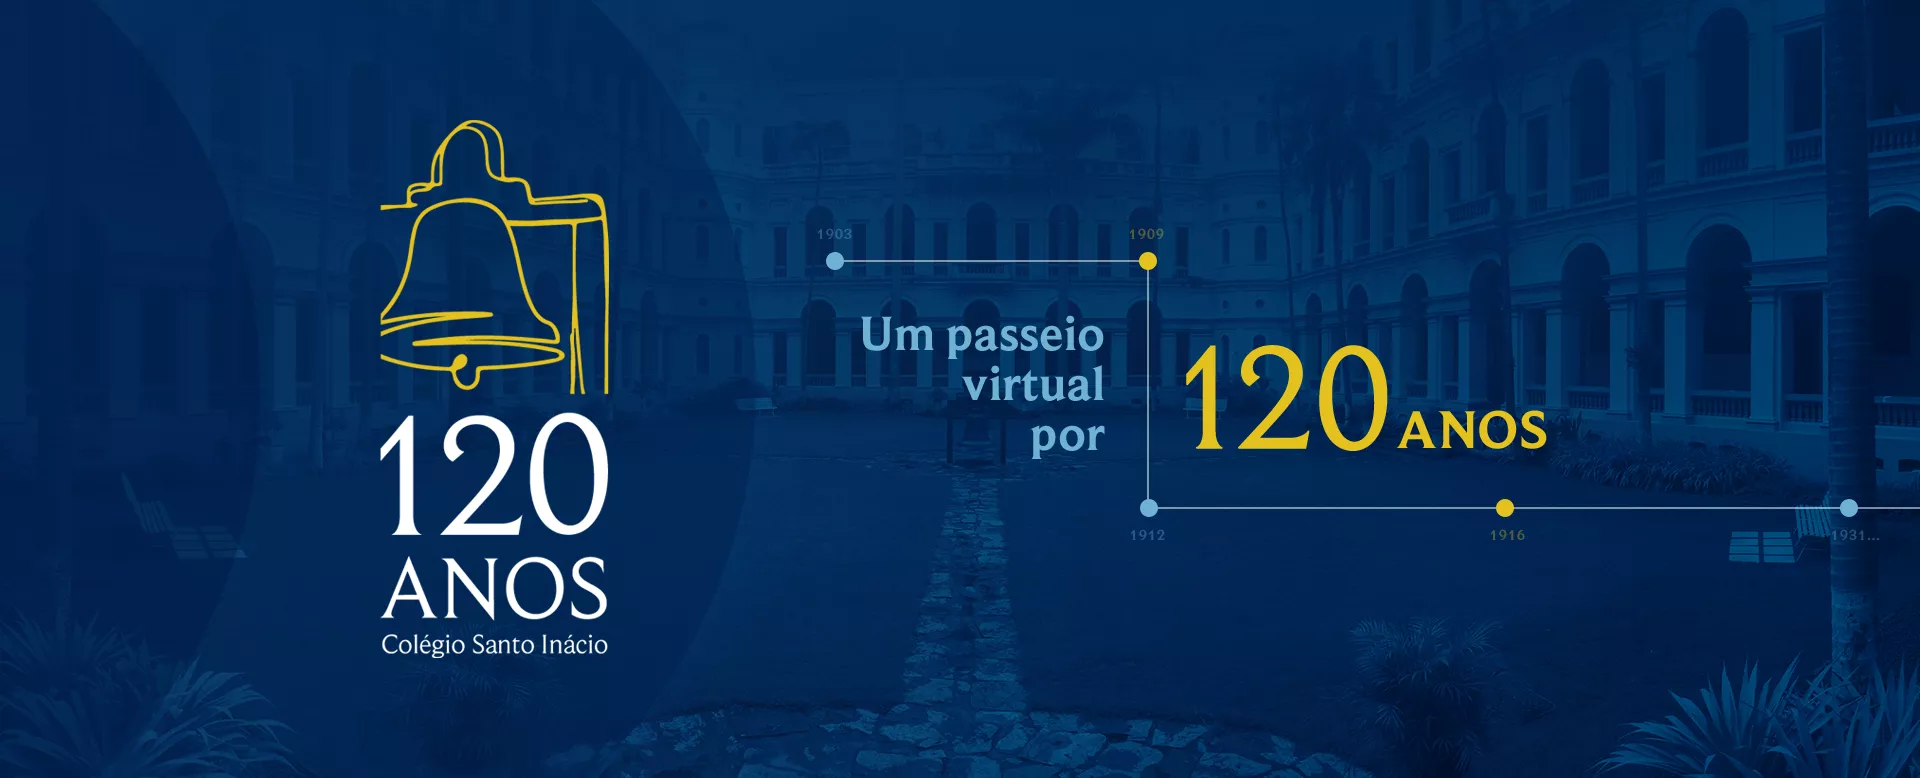 120 anos Colégio Santo Inácio. Um passeio virtual por 120 anos